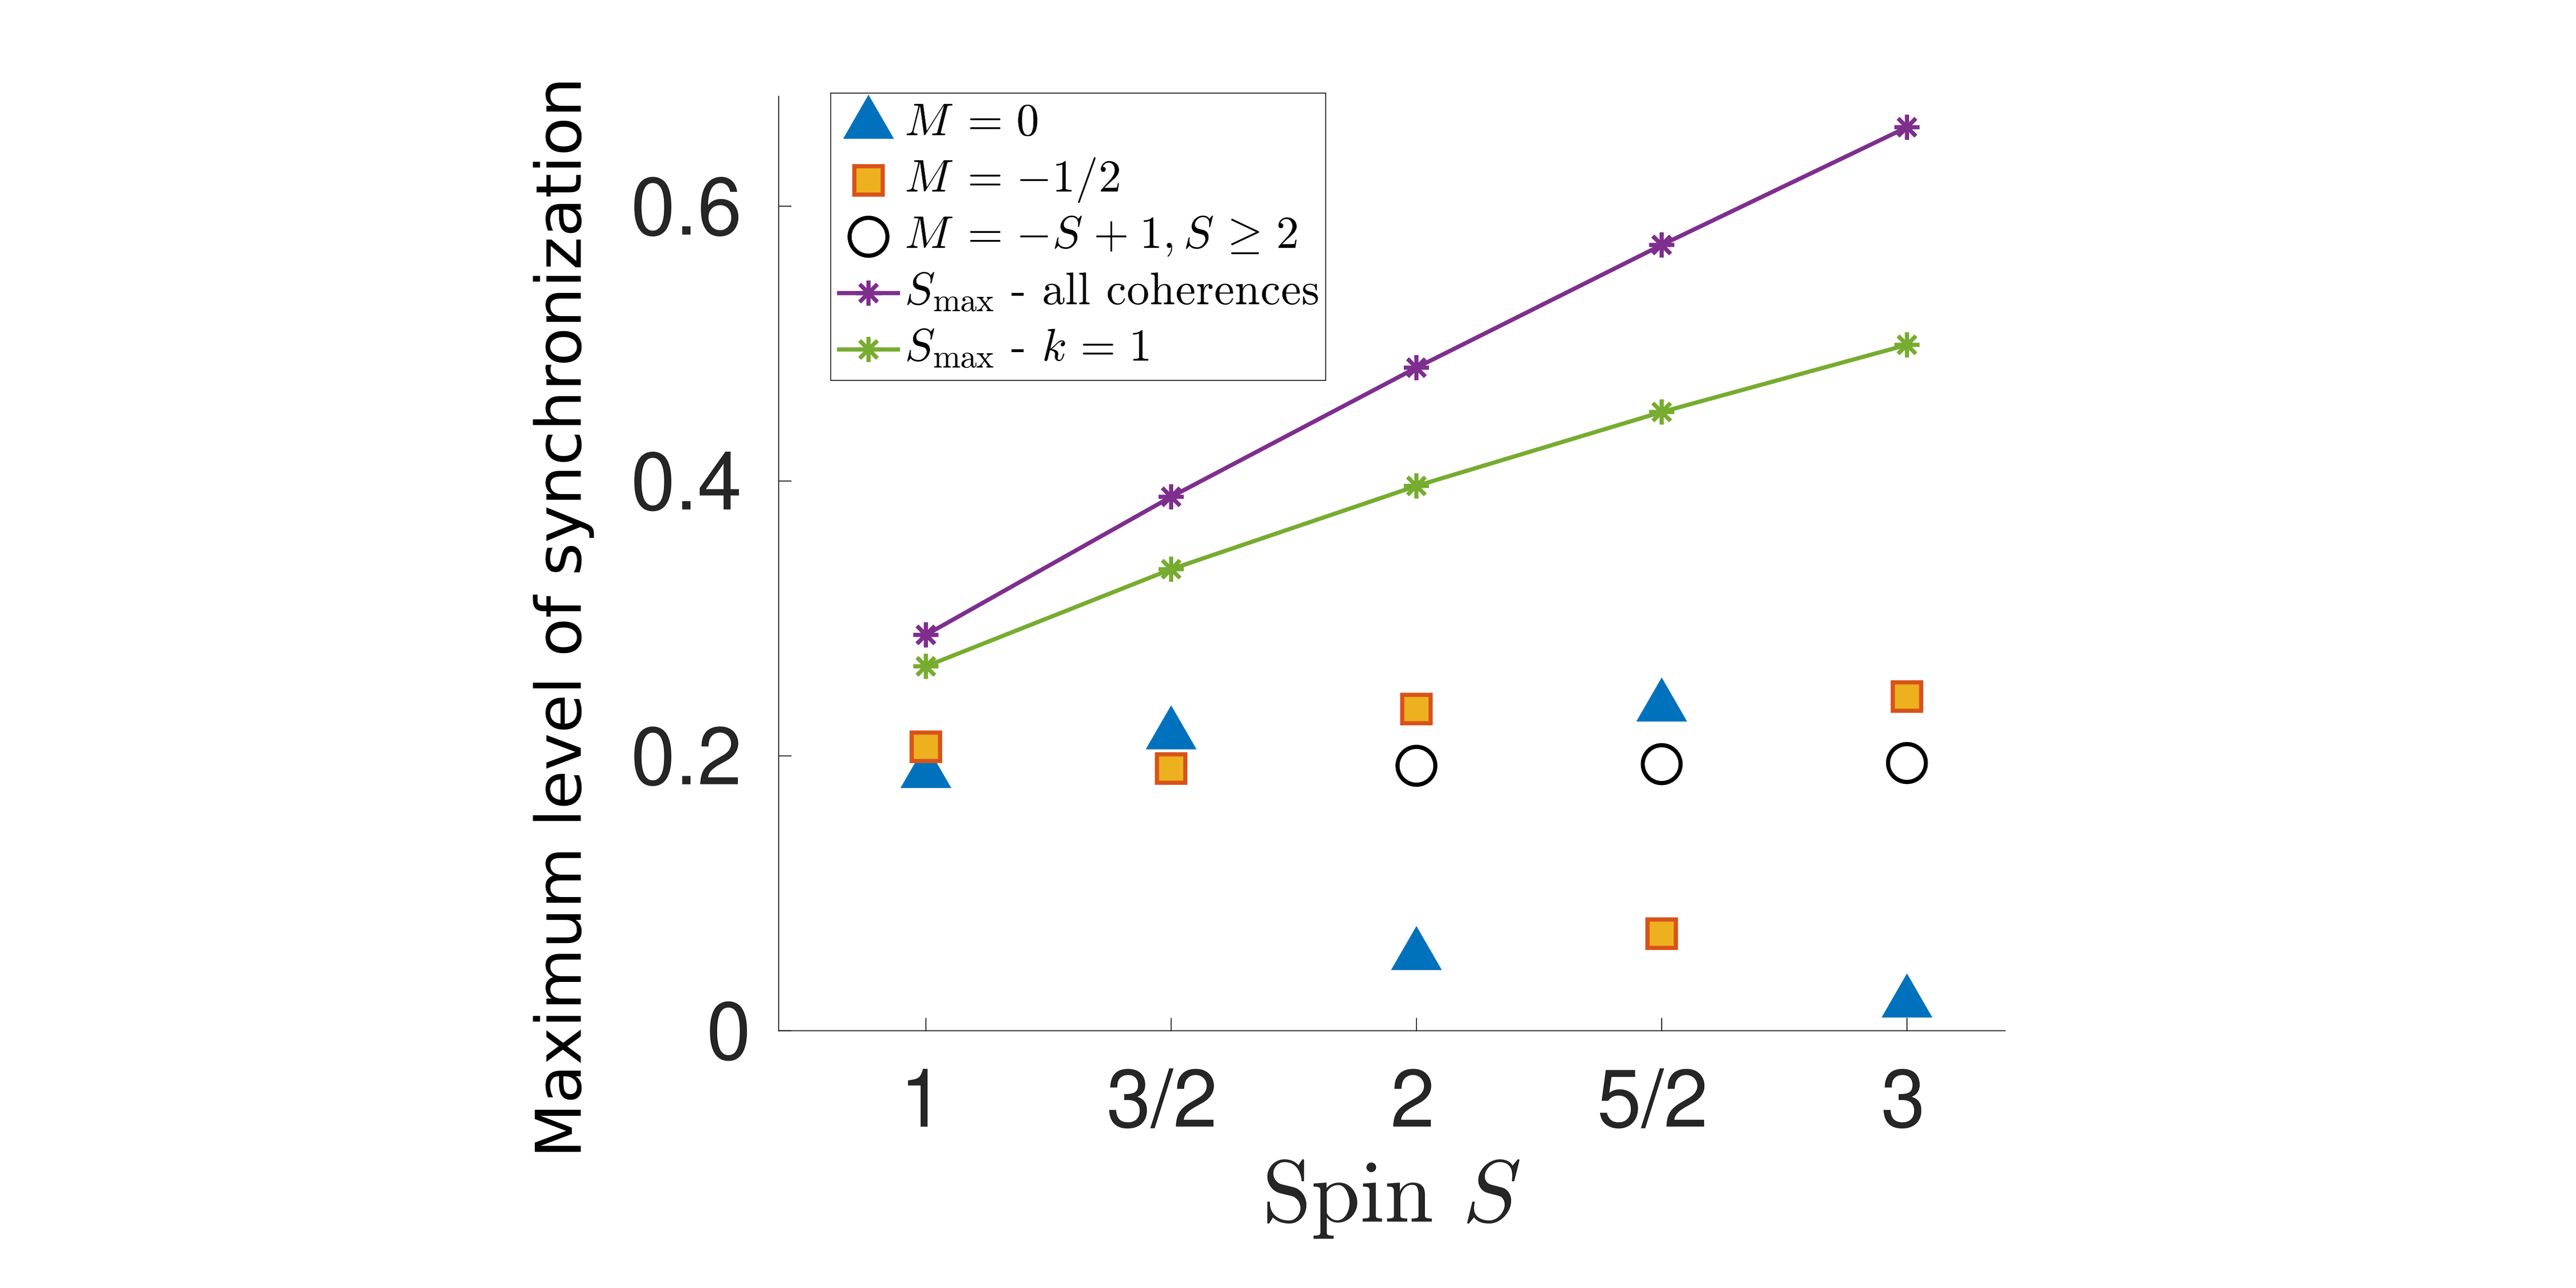 Effekter af halvt heltal vs. heltal i kvantesynkronisering af spinsystemer